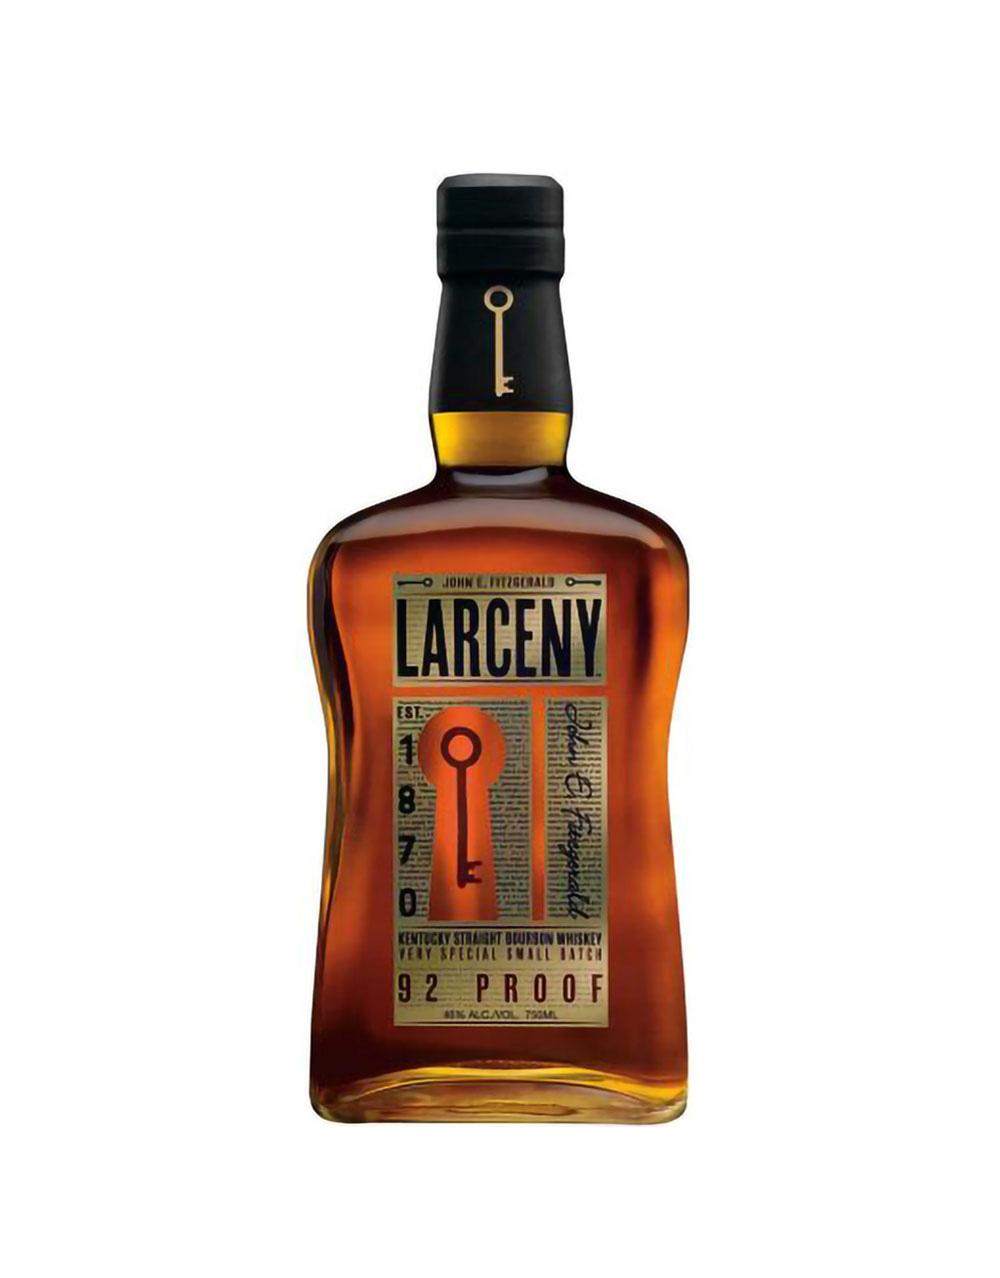 Larceny Very Special Small Batch Kentucky Straight Bourbon Whiskey